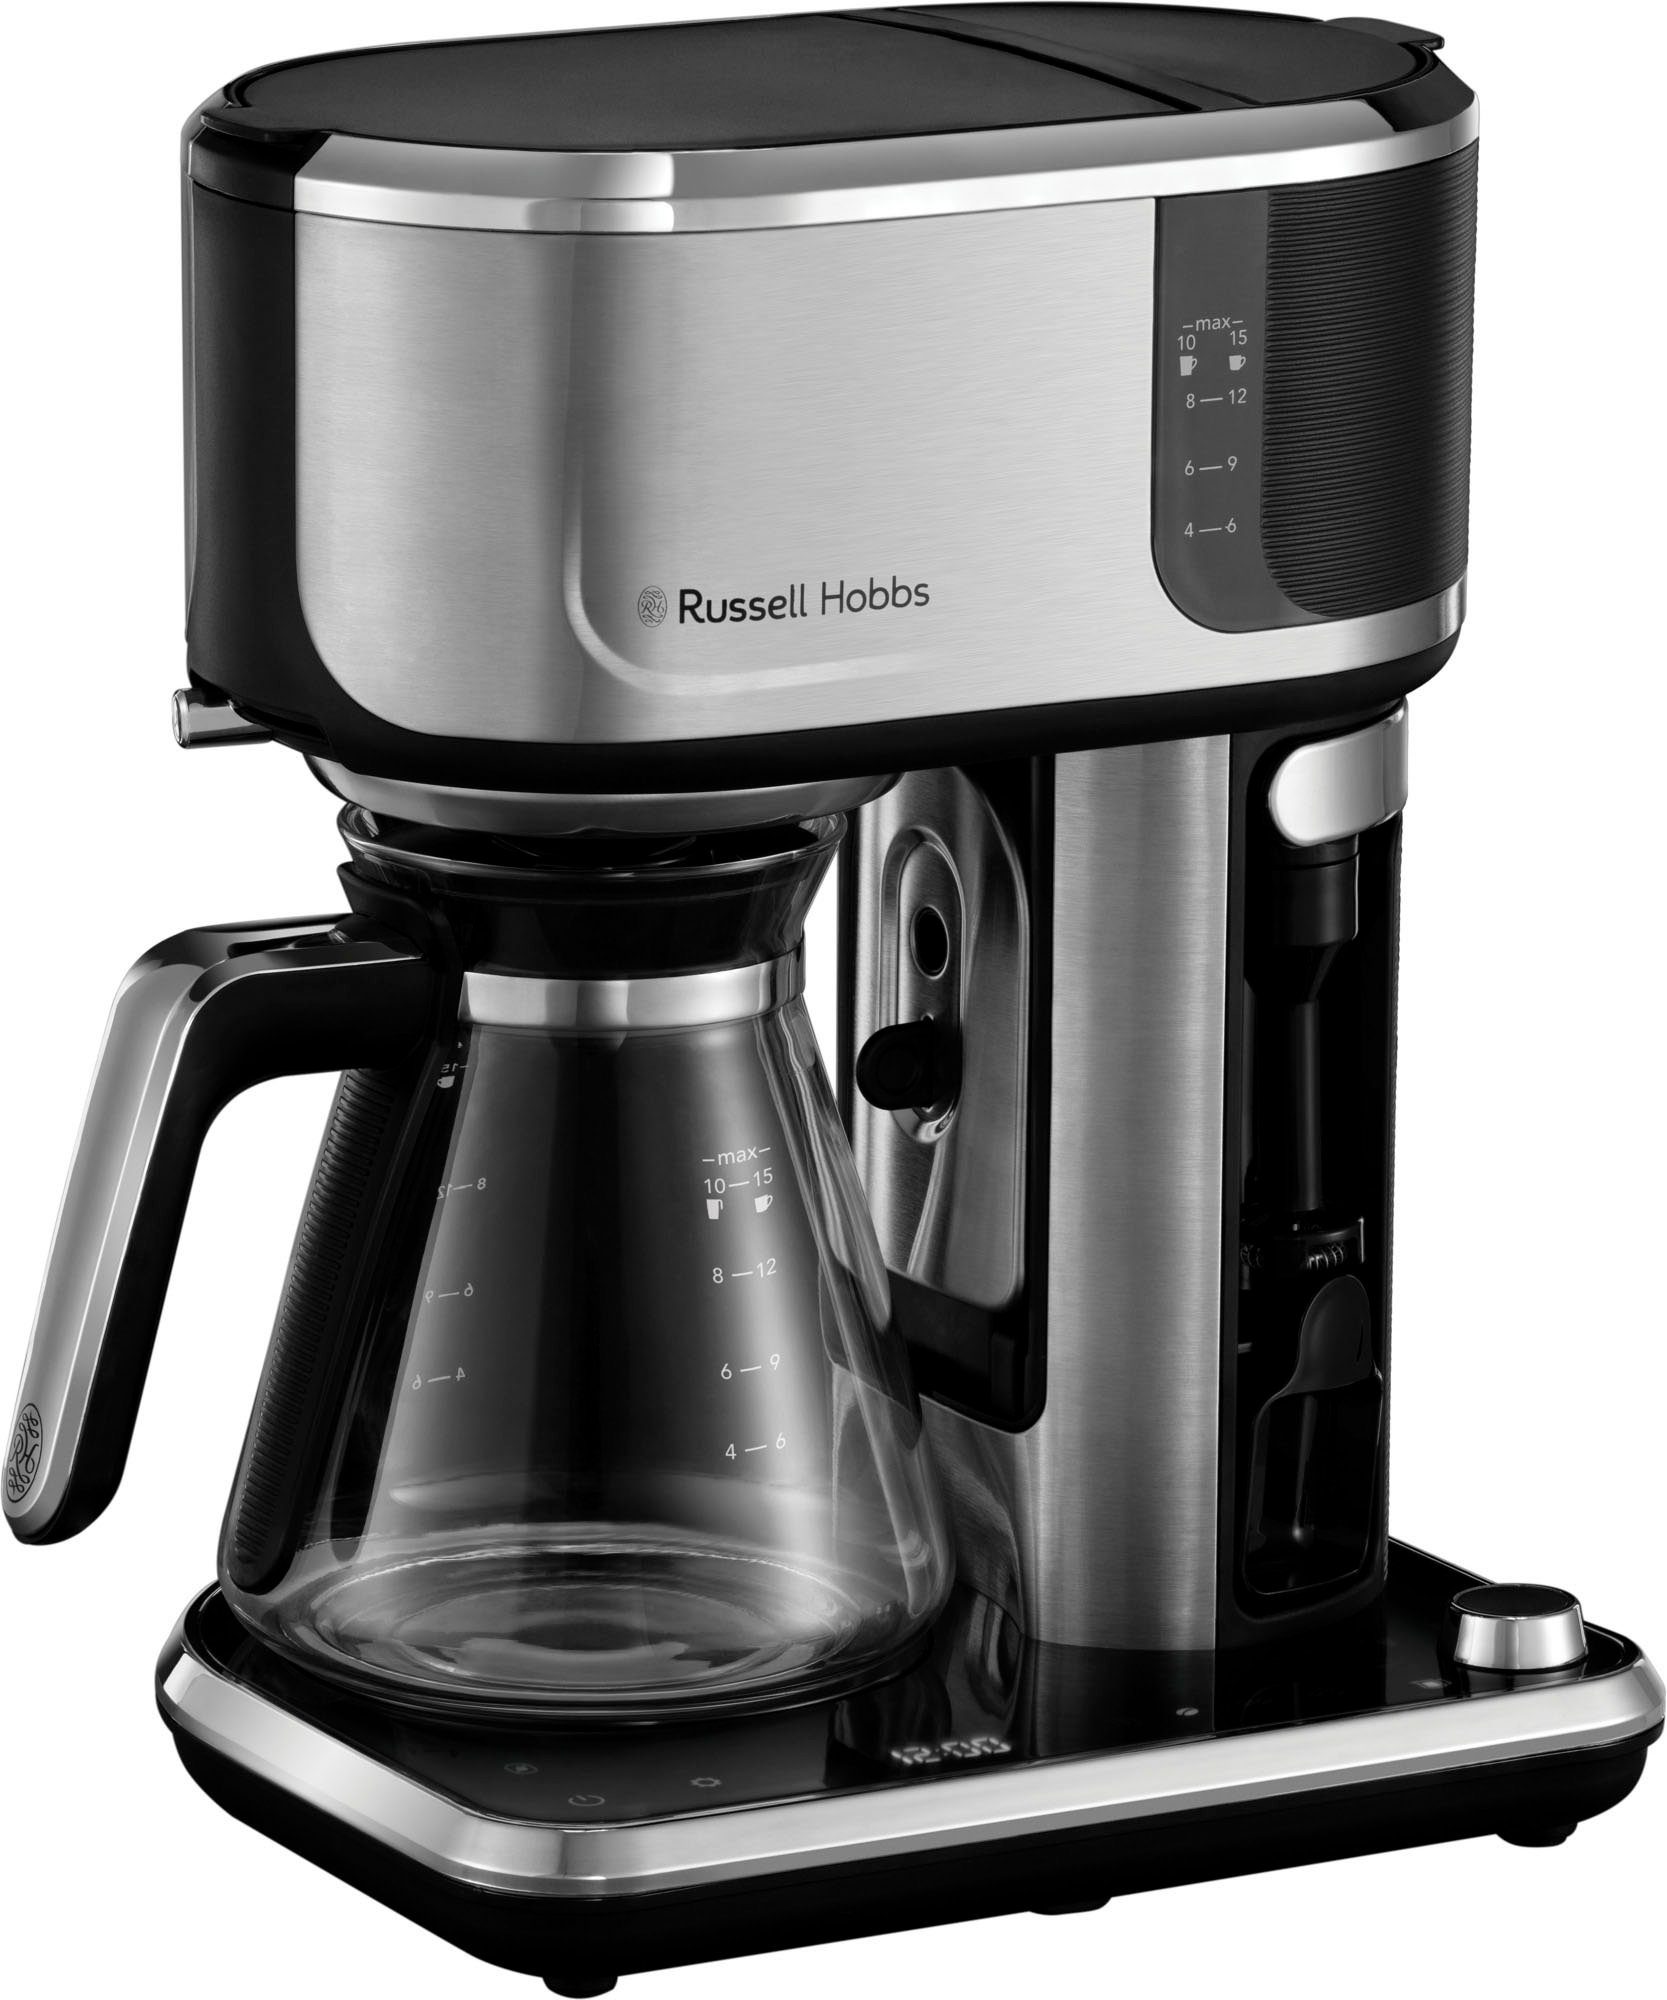 RUSSELL HOBBS Filterkaffeemaschine Attentiv 26230-56 Coffee Bar, 1,25l  Kaffeekanne, Papierfilter 1x4, Auch als Serie erhältlich inkl. Toaster &  Wasserkocher